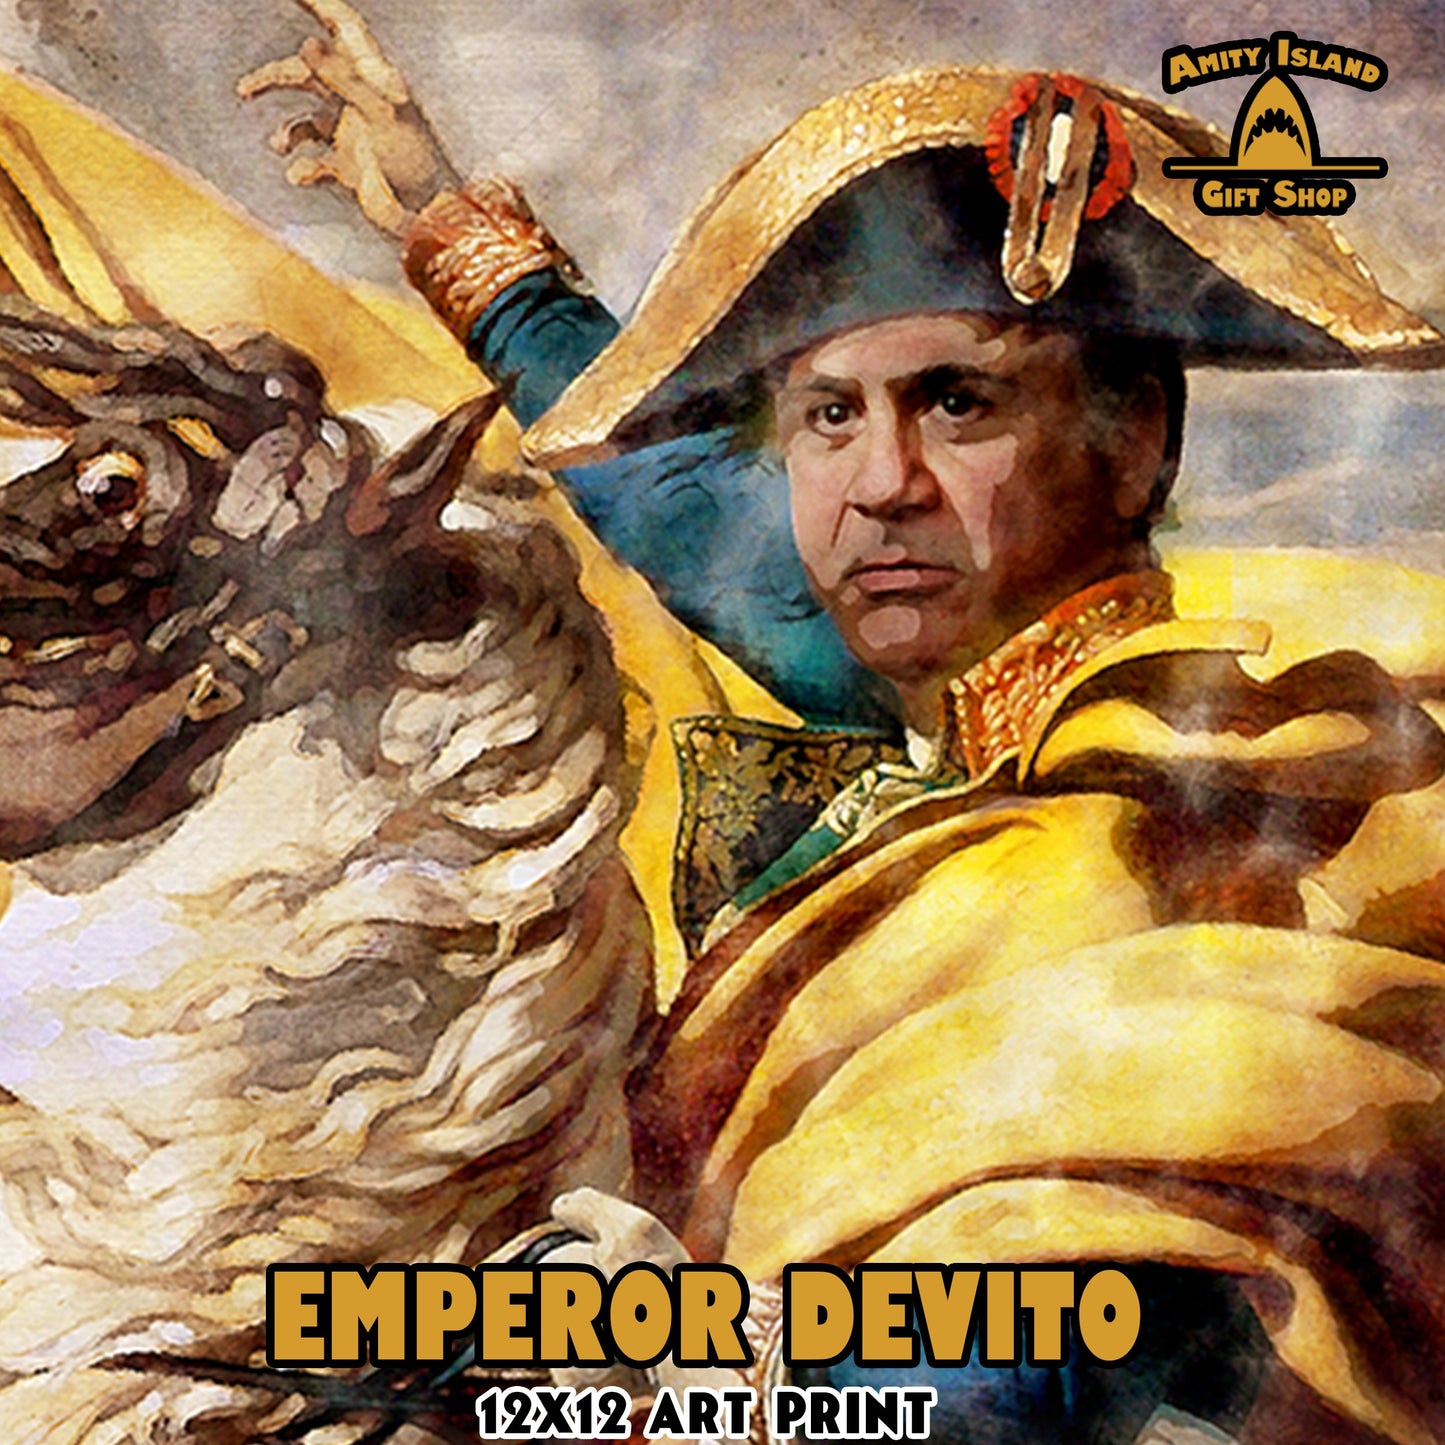 Emperor Devito - Danny Devito as Napoleon - 12x12 Print